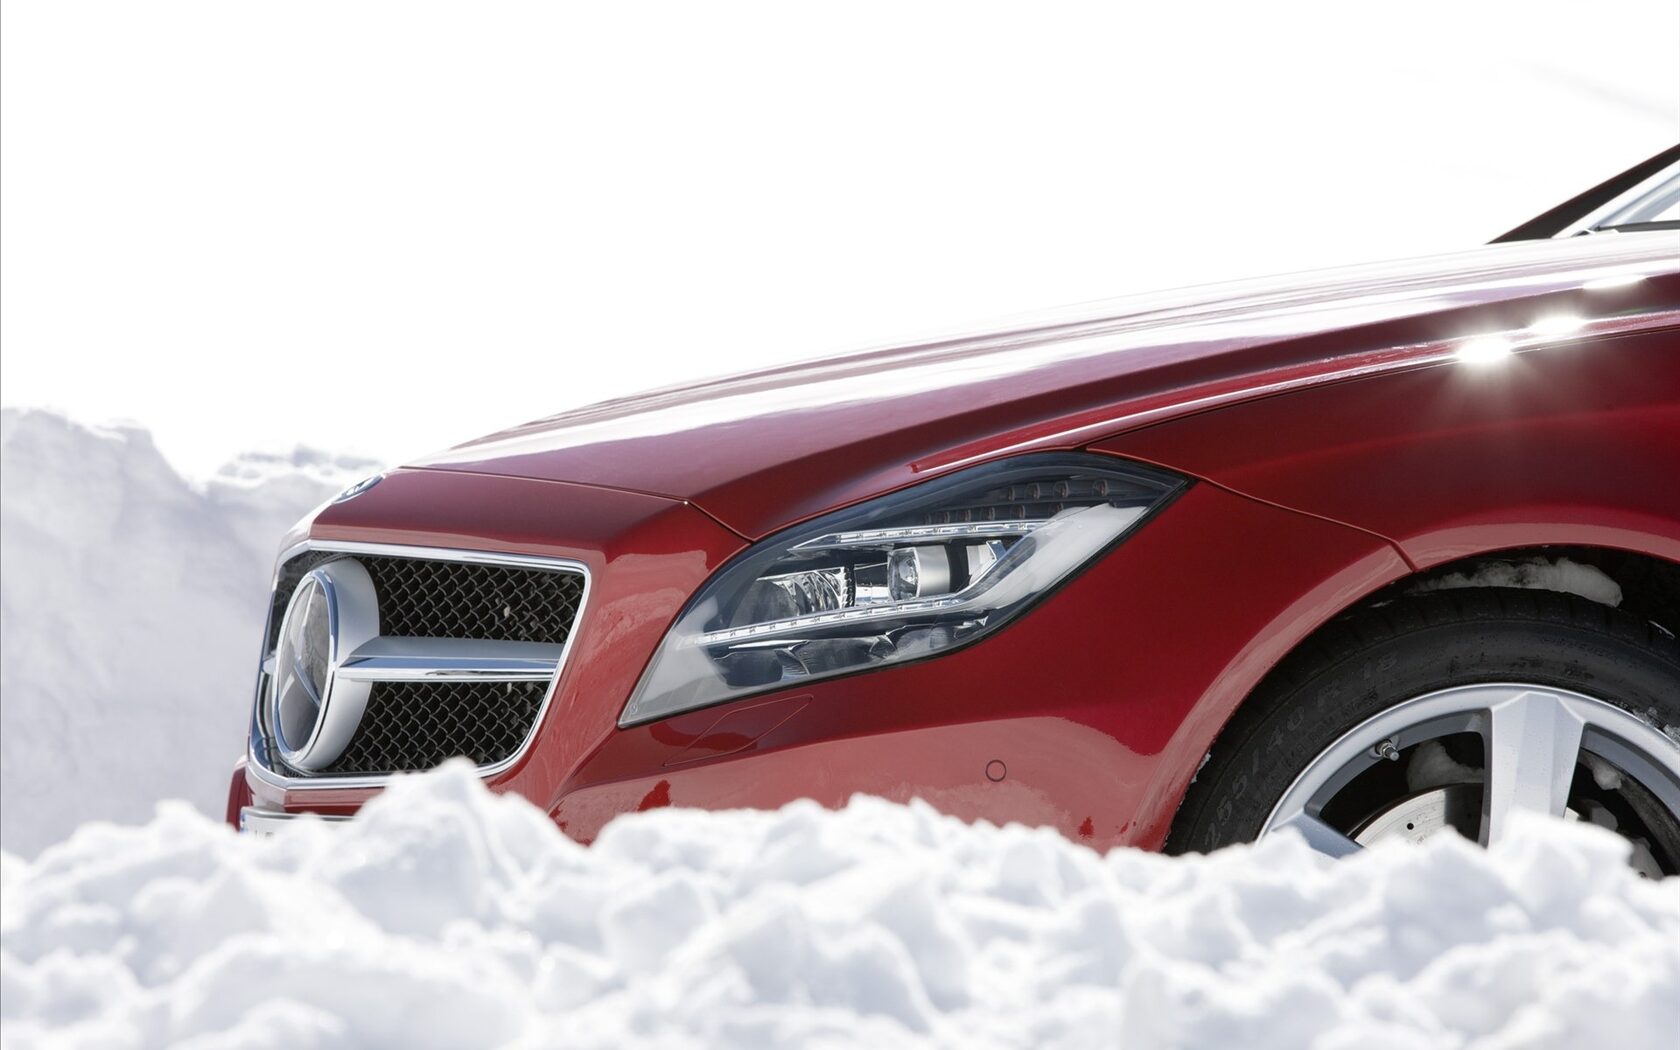 Mercedes Benz 4matic Snow